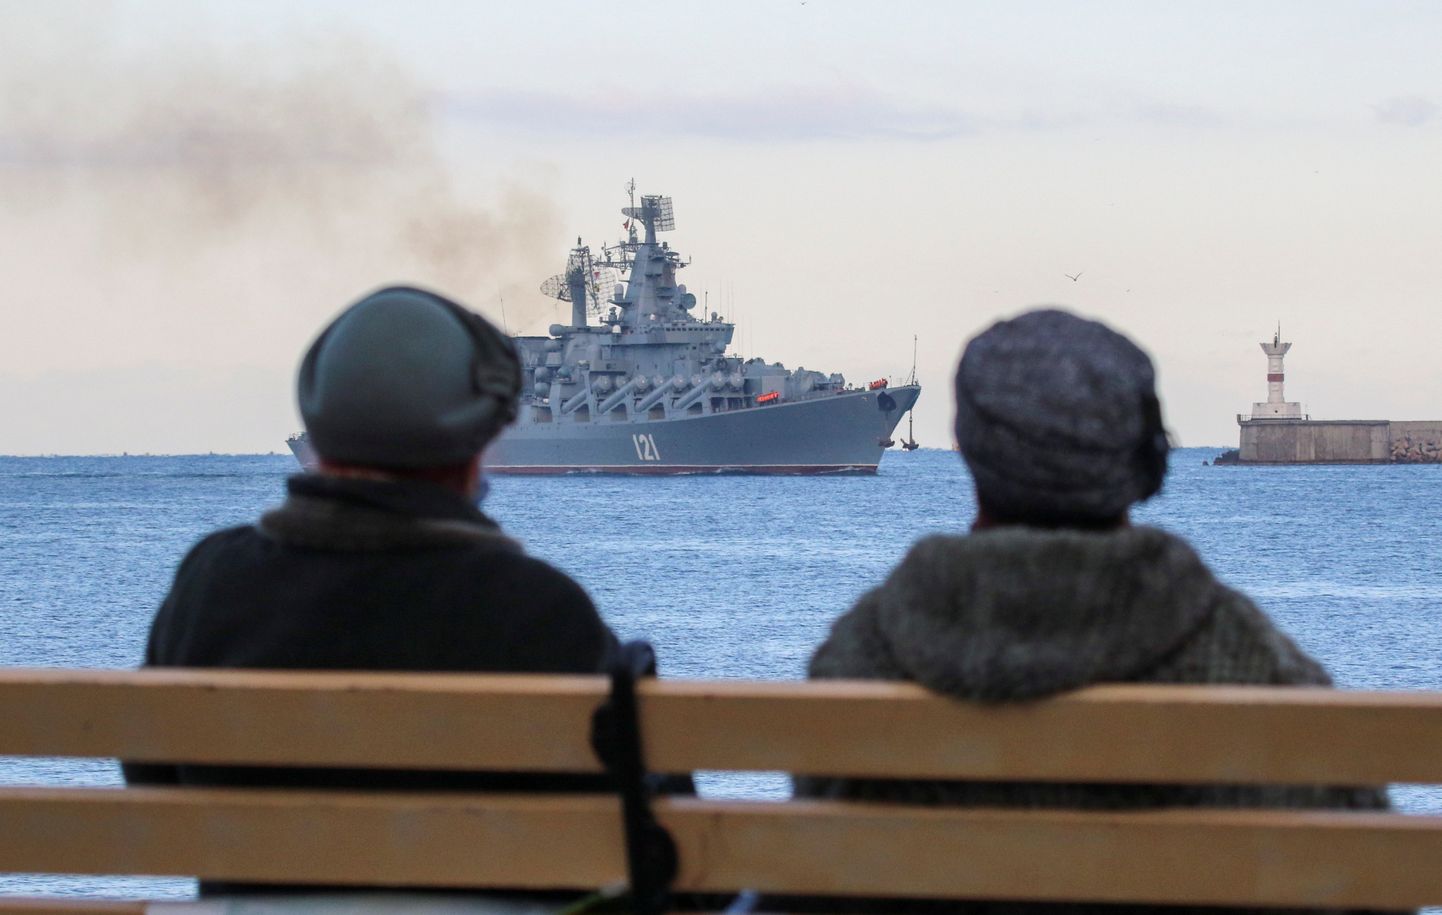 Venemaa on peaaegu kaotanud kontrolli Musta mere üle. Ukrainal õnnestus ilma laevastikuta saavutada võit meresõjas, kuna nad ei saanud laevastiku puudumisel sõdida klassikaliselt ning pidid otsima uusi lahendusi. Pildil seilab sõjalaev Moskva Sevastopolisse peale NATO sõjalaeva jälgimist 16. novembril 2021.